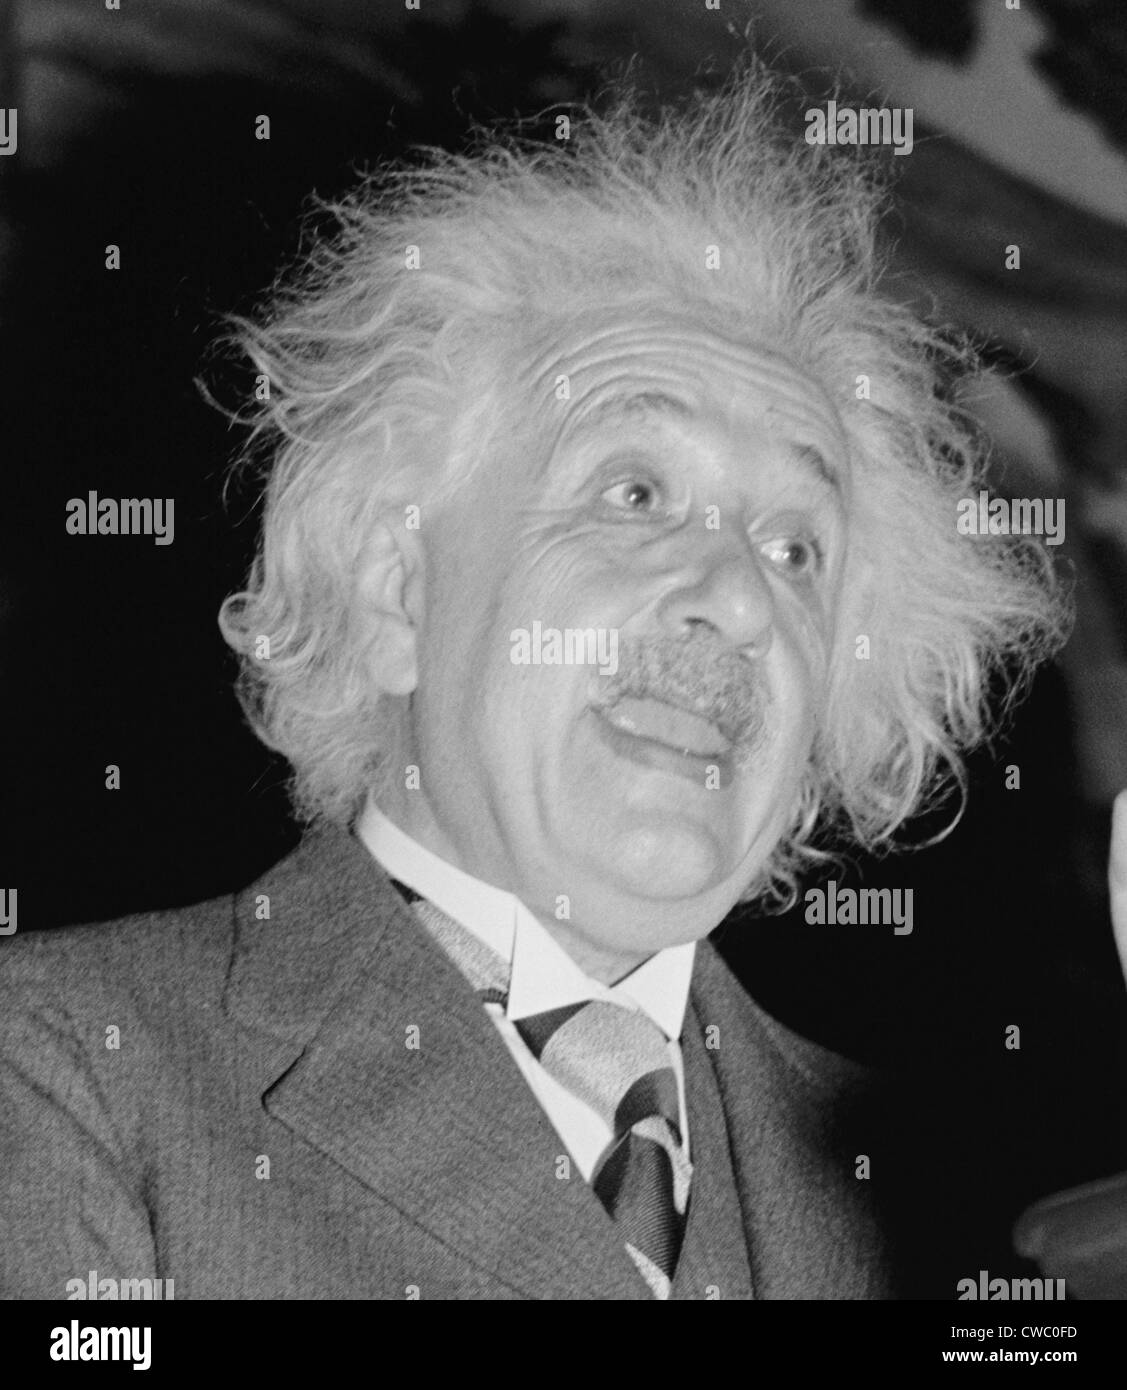 Albert Einstein (1879-1955), speaking in Washington, D.C. ca. 1940. Stock Photo